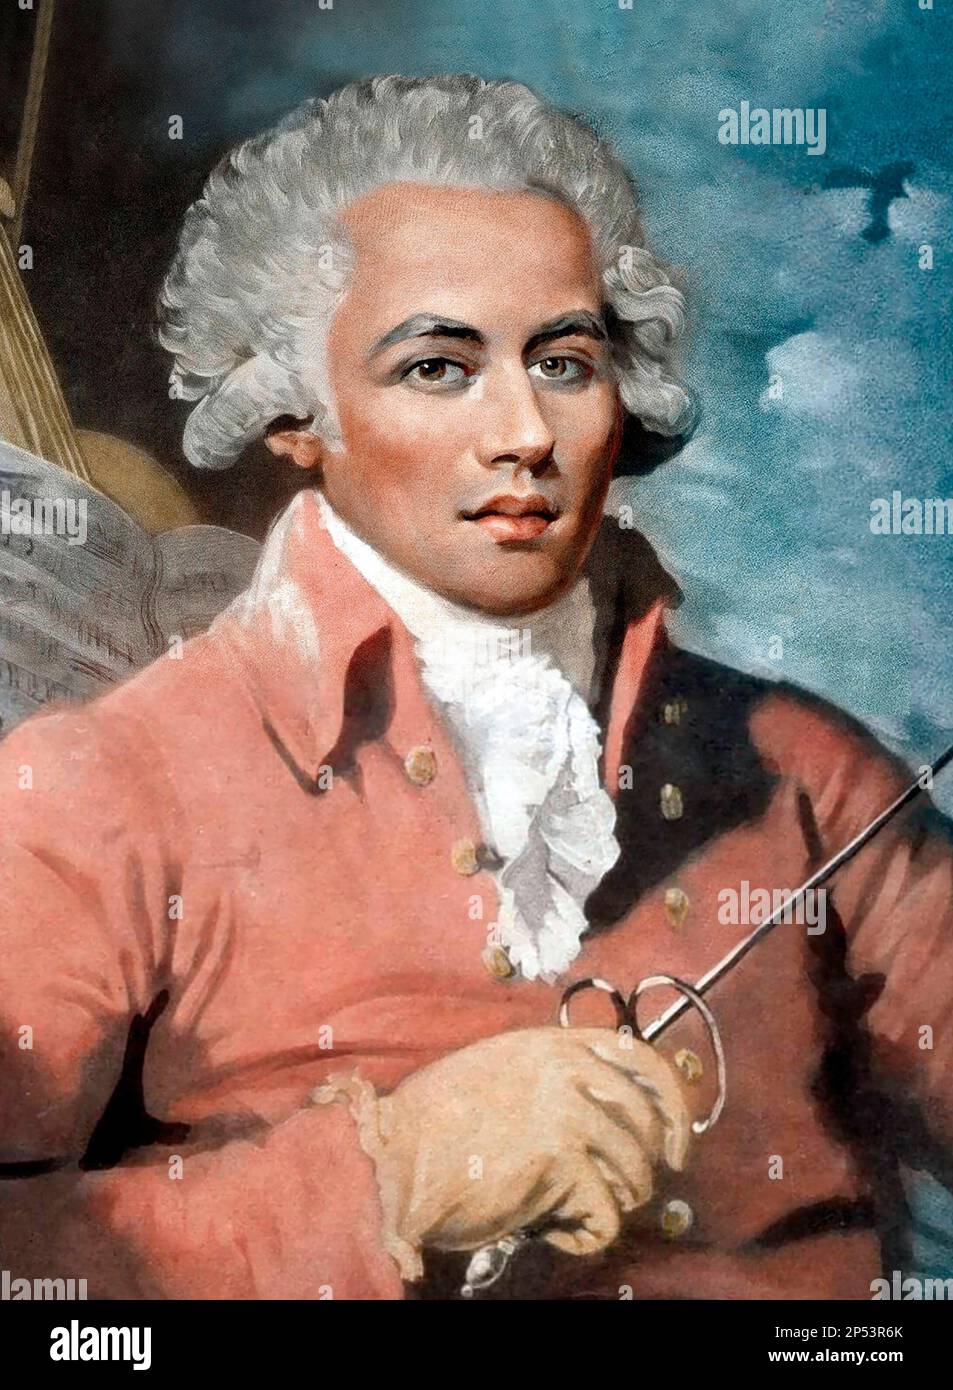 Chevalier de Saint-Georges. Ritratto del violinista e compositore francese, Joseph Bologne, Chevalier de Saint-Georges (1745-1799), dipinto di Mather Brown, 1789 Foto Stock